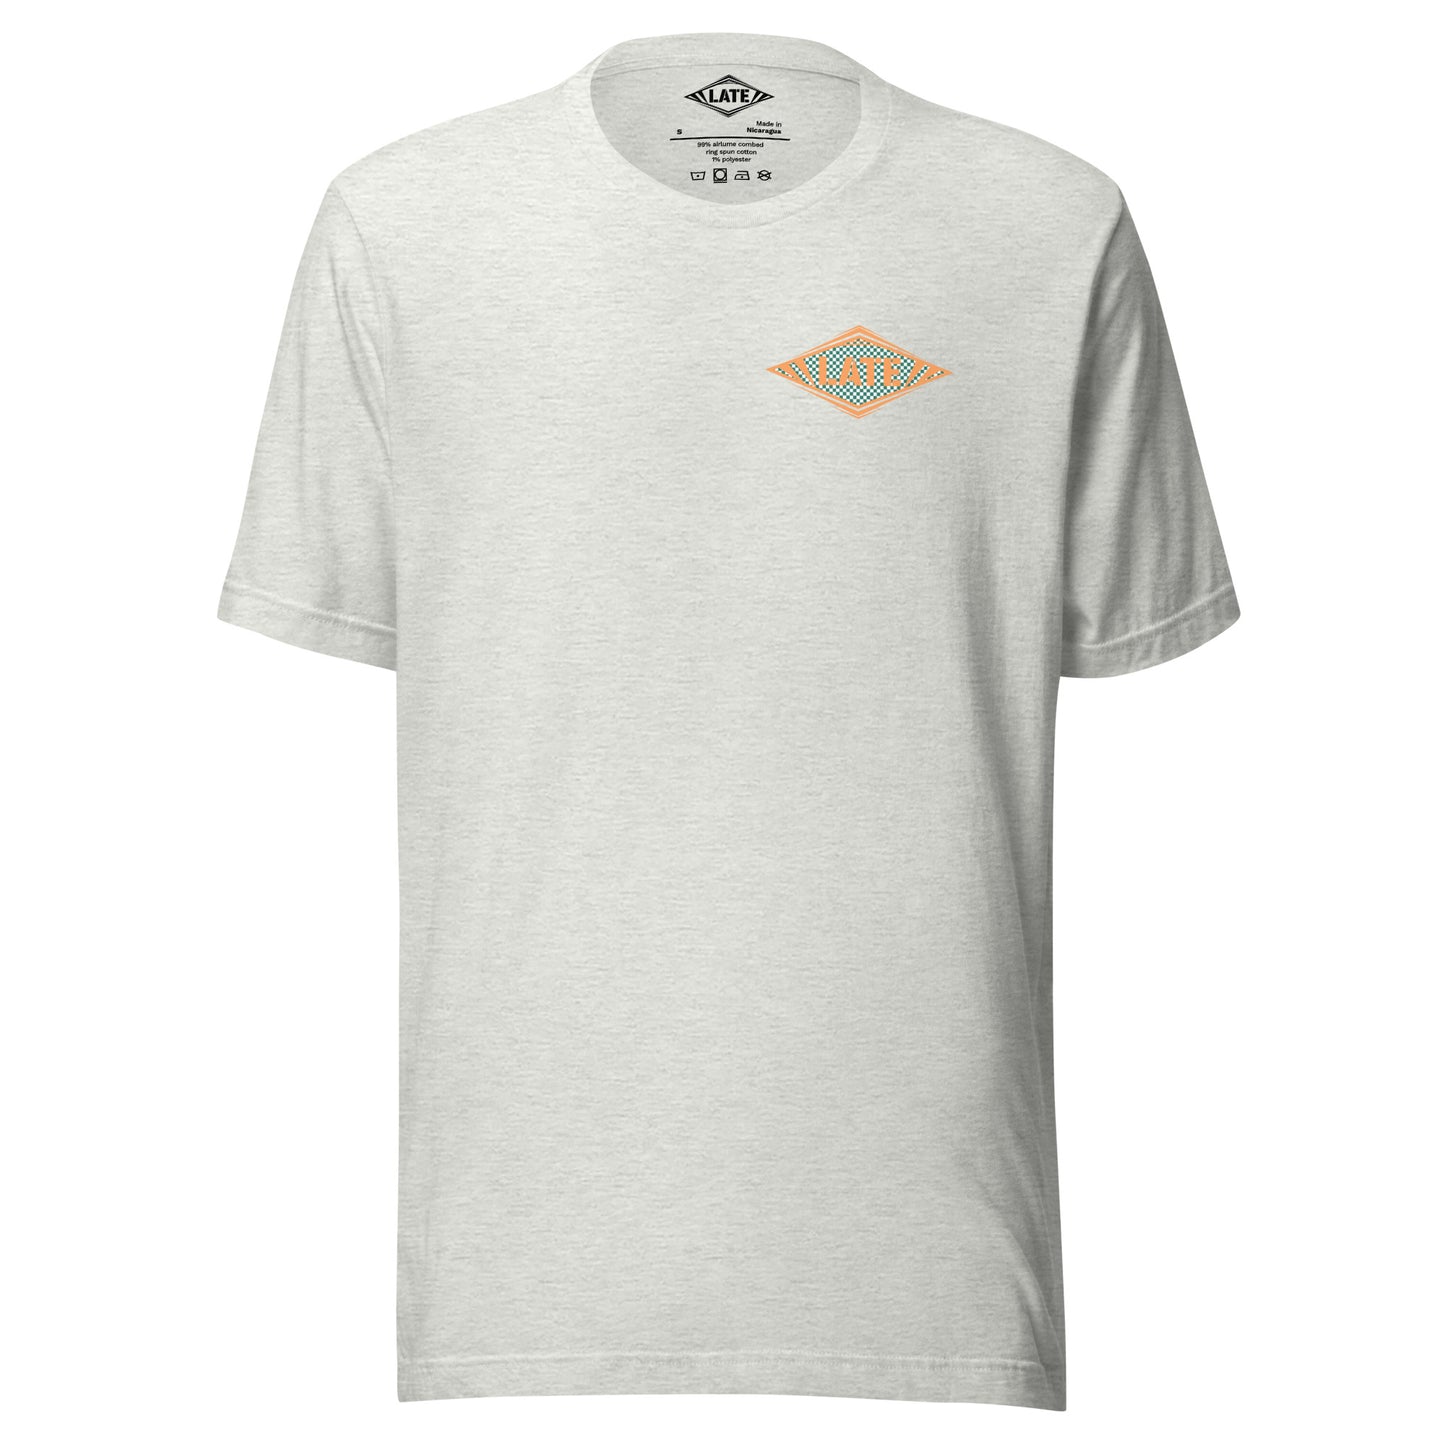 T-Shirt Shred It skateboard style Vans logo Late à carreaux. T-Shirt unisex de face couleur gris